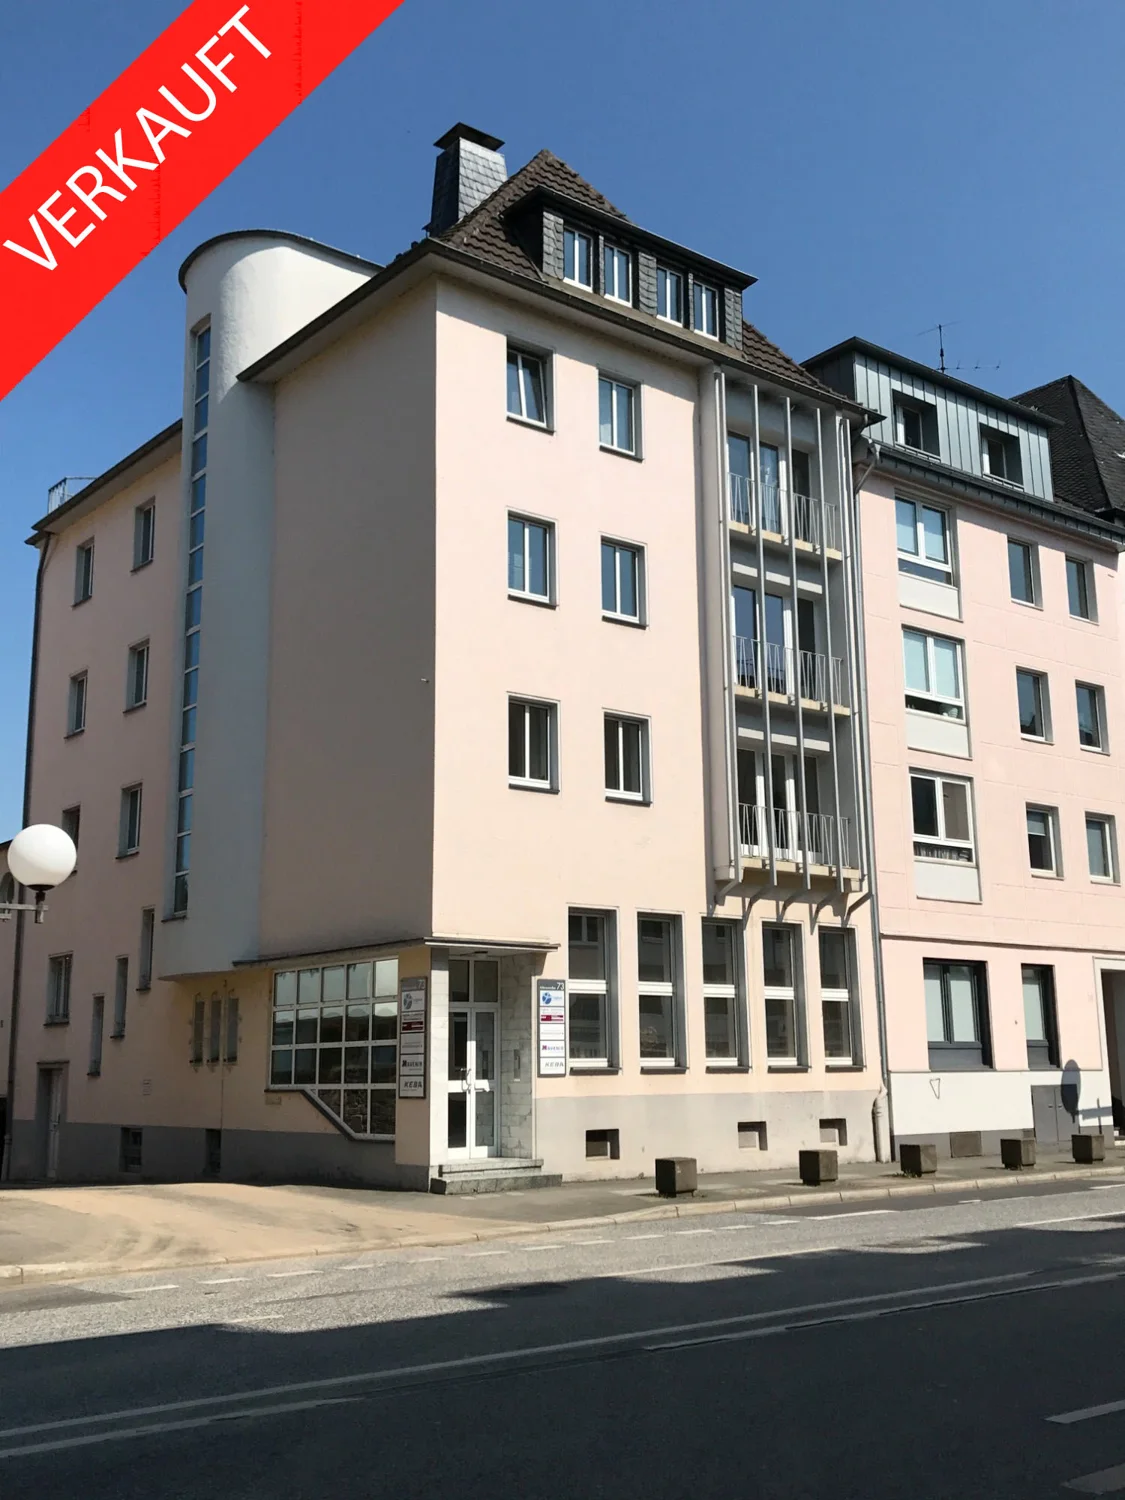 Verkauft - Immobilie in attraktiver Lage von Bonn!